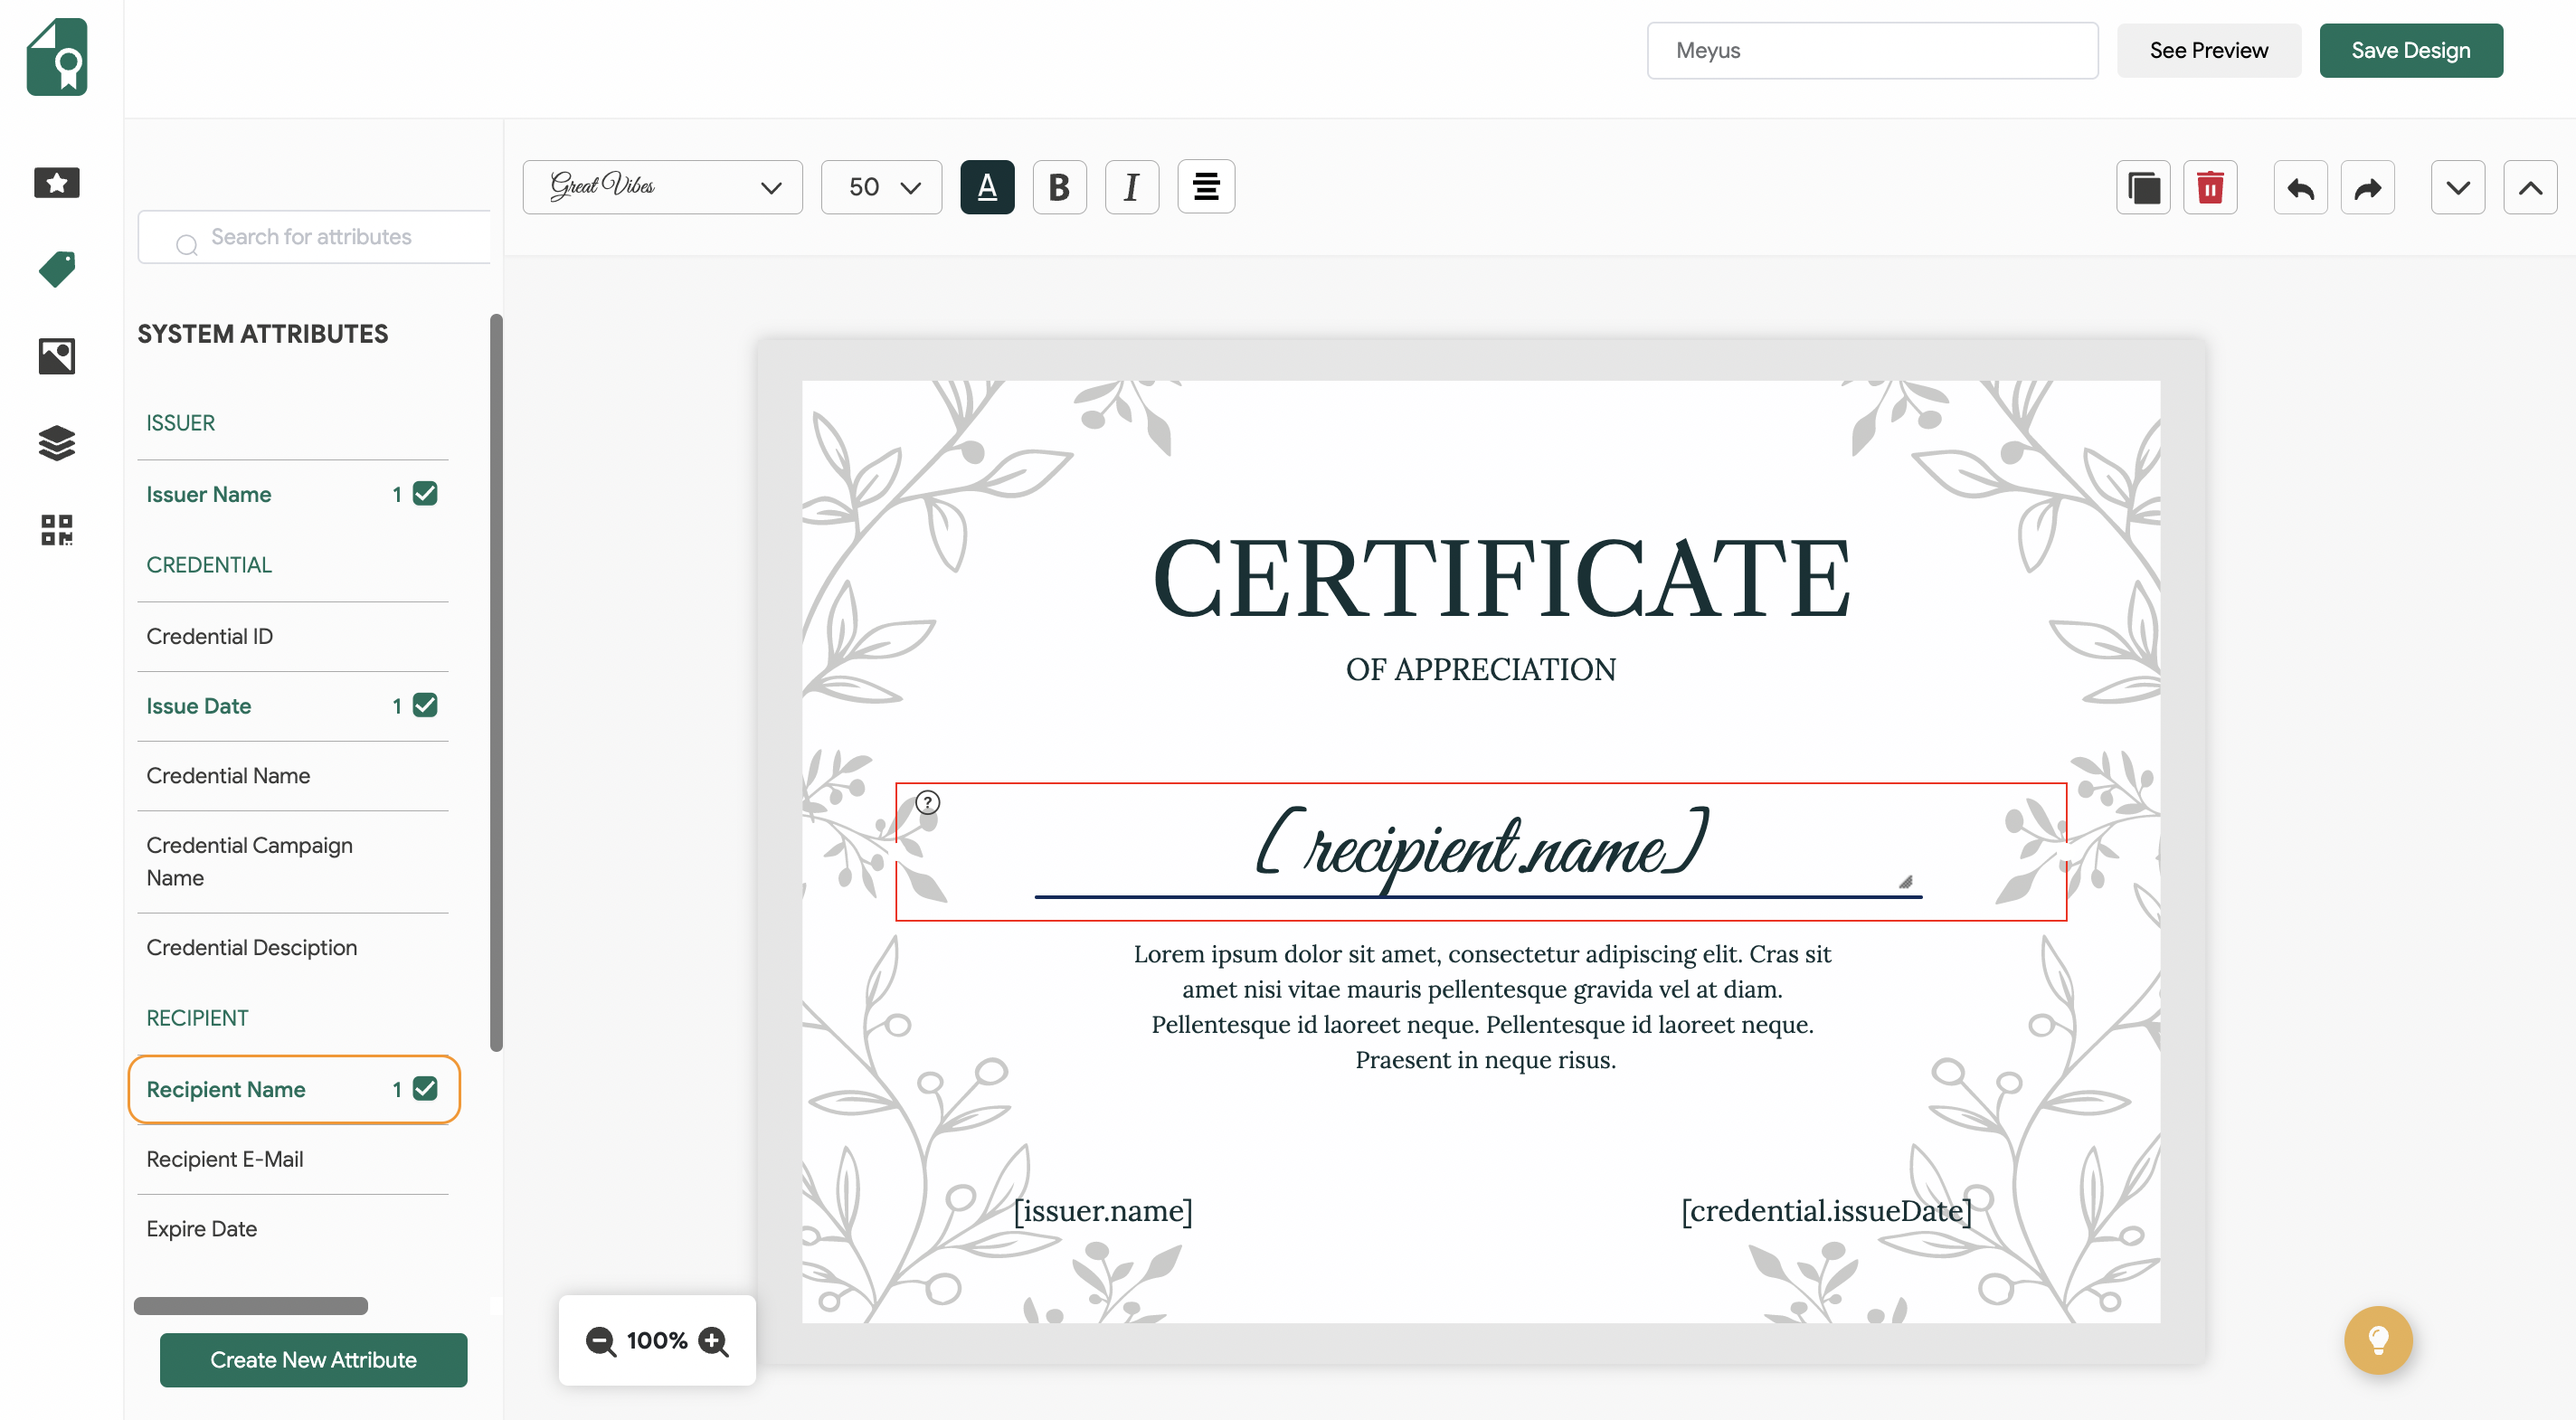 add recipient name attribute to certificate design